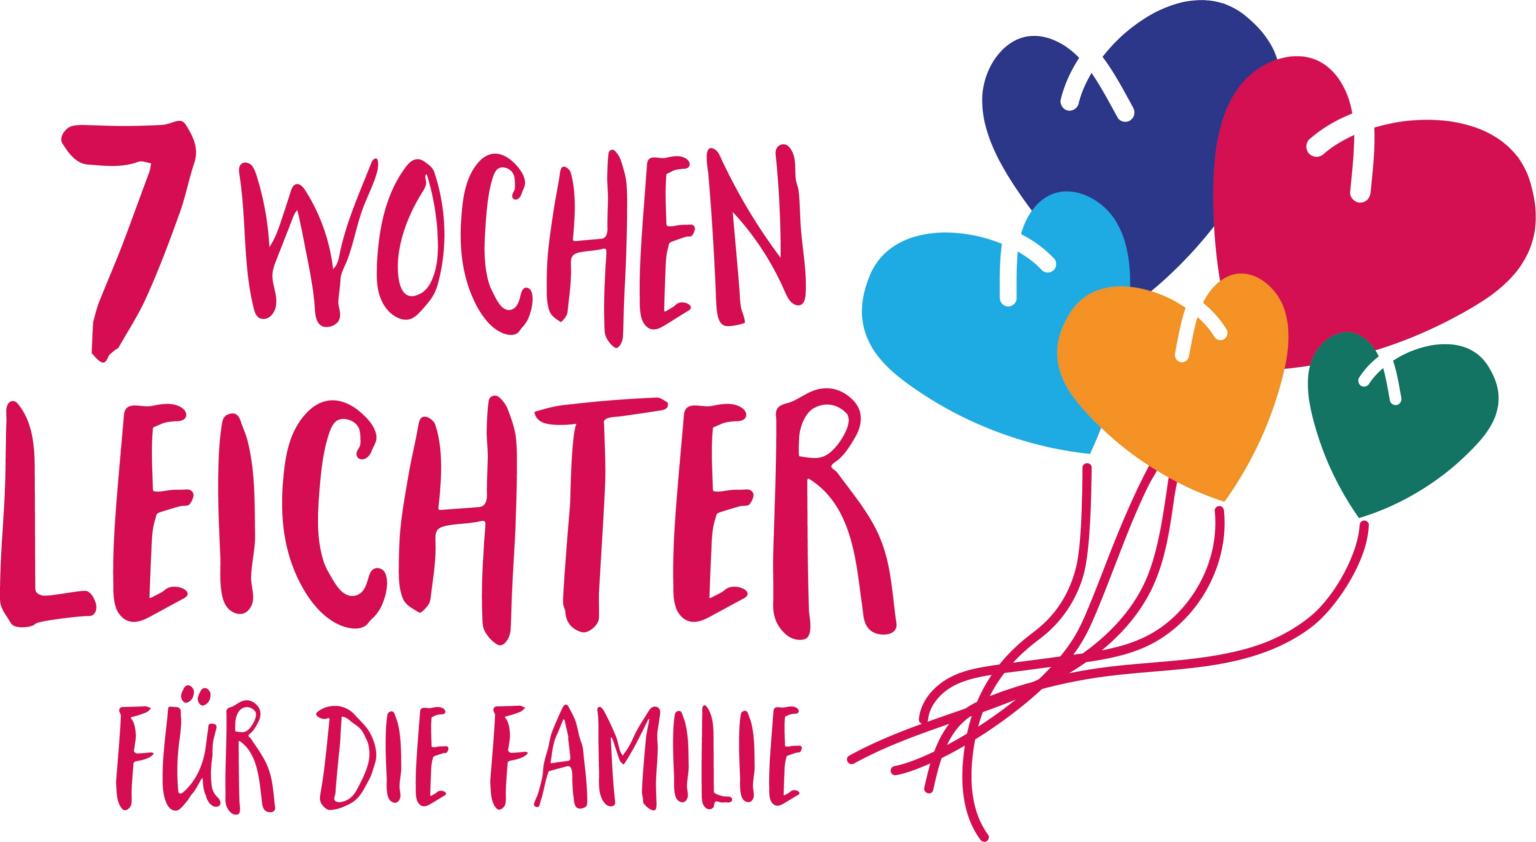 7 Wochen leichter für Familien (c) AKF; in: Pfarrbriefservice.de